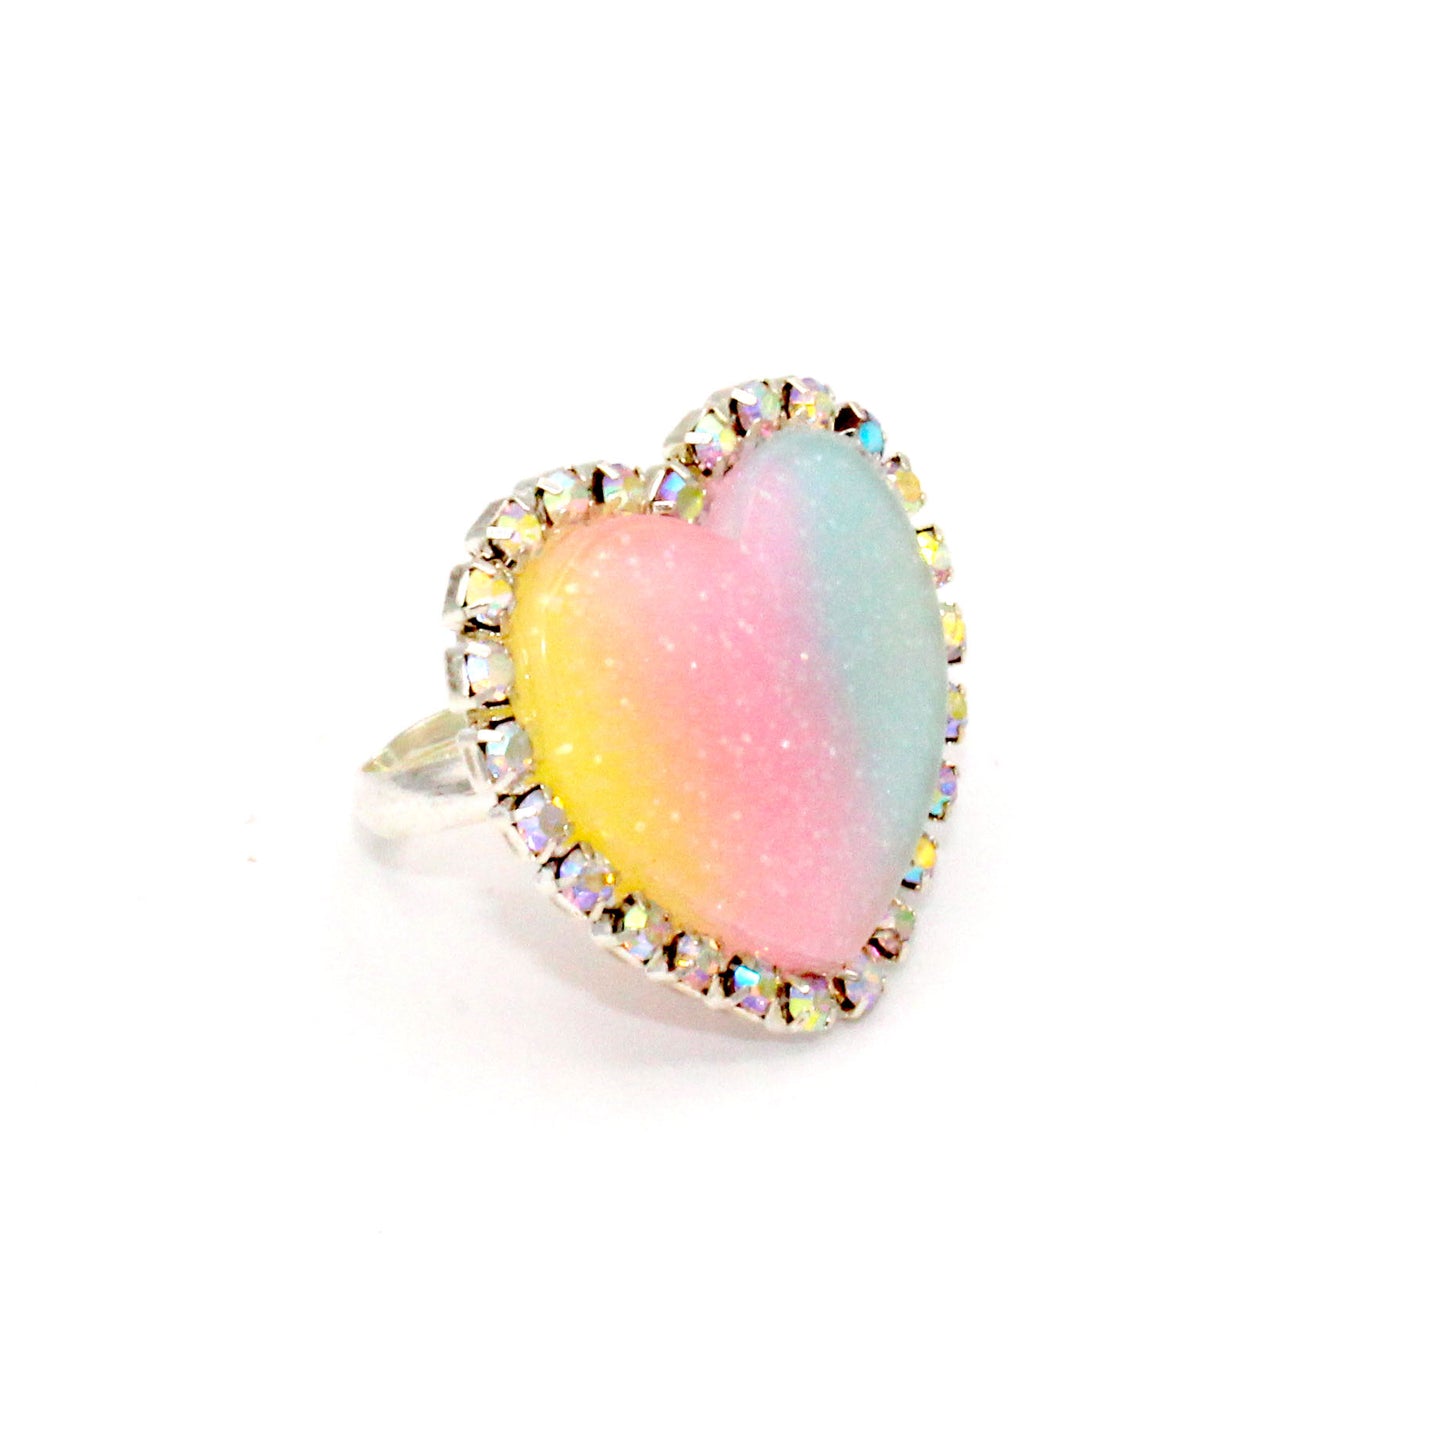 Trinket Ring - Pastel Rainbow - Adjustable